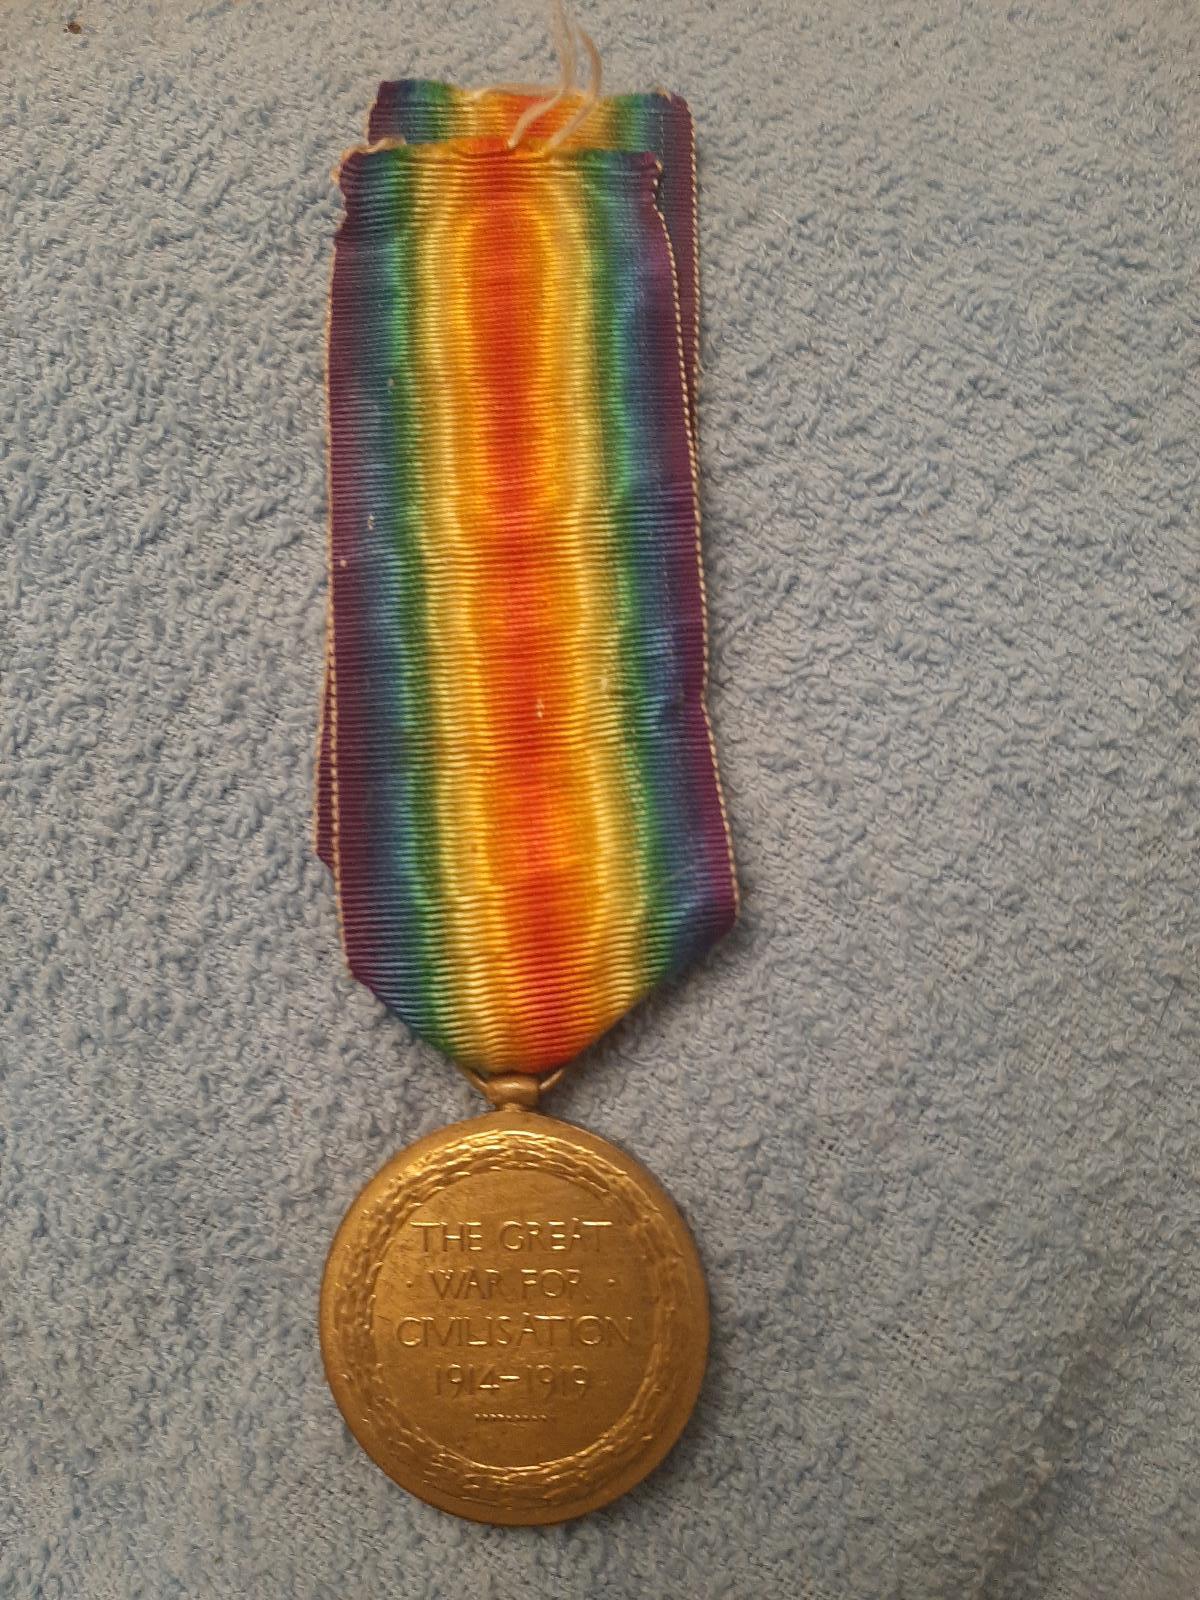 Medaile vítězství Anglie,1914/19, serž. dělostřelectva, dlouhá  stuha  - Sběratelství